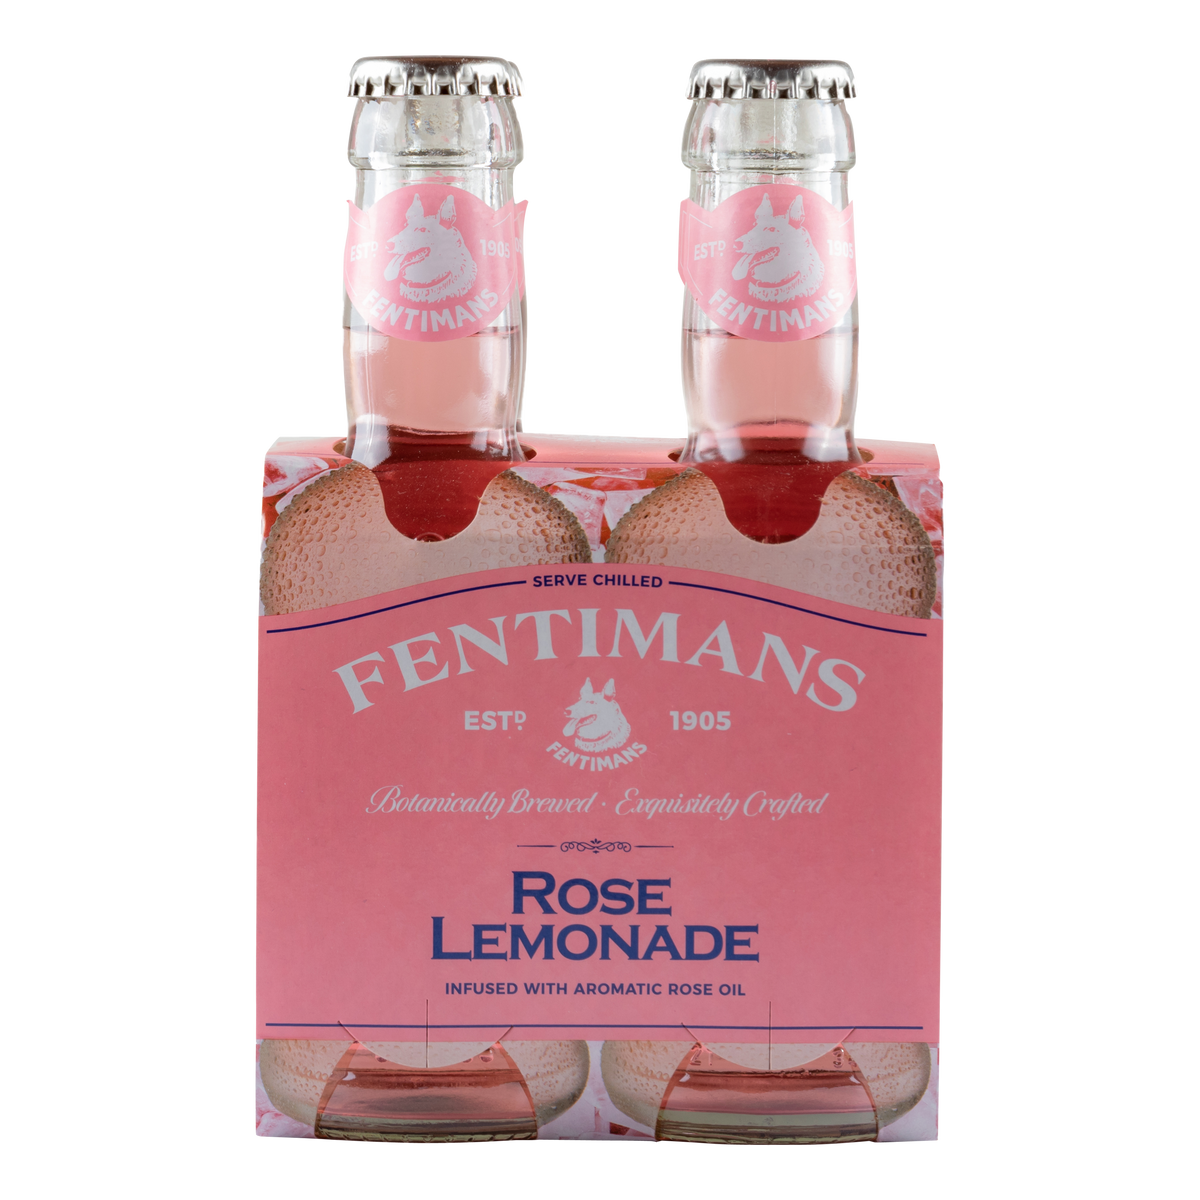 Egmonts Garden gin fentimans rose lemonade tonic roze limonade